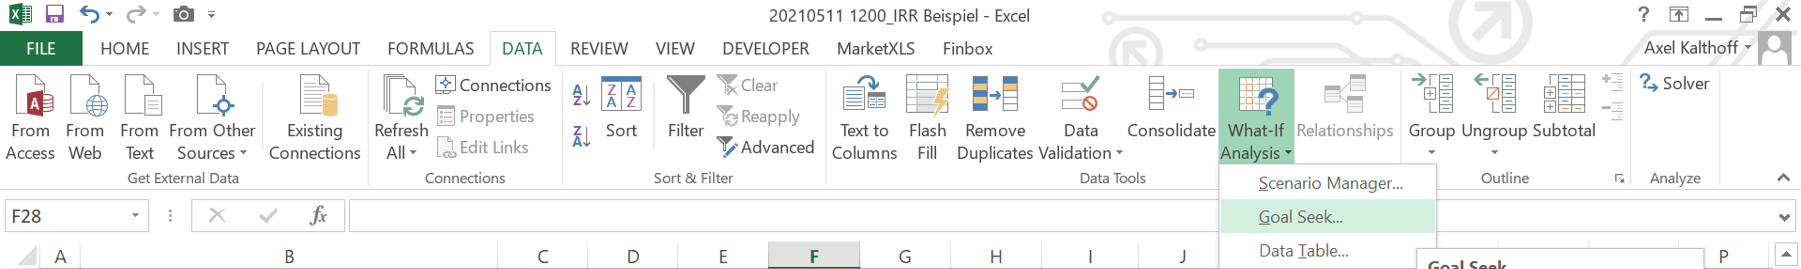 Goal Seek Funktion in Excel